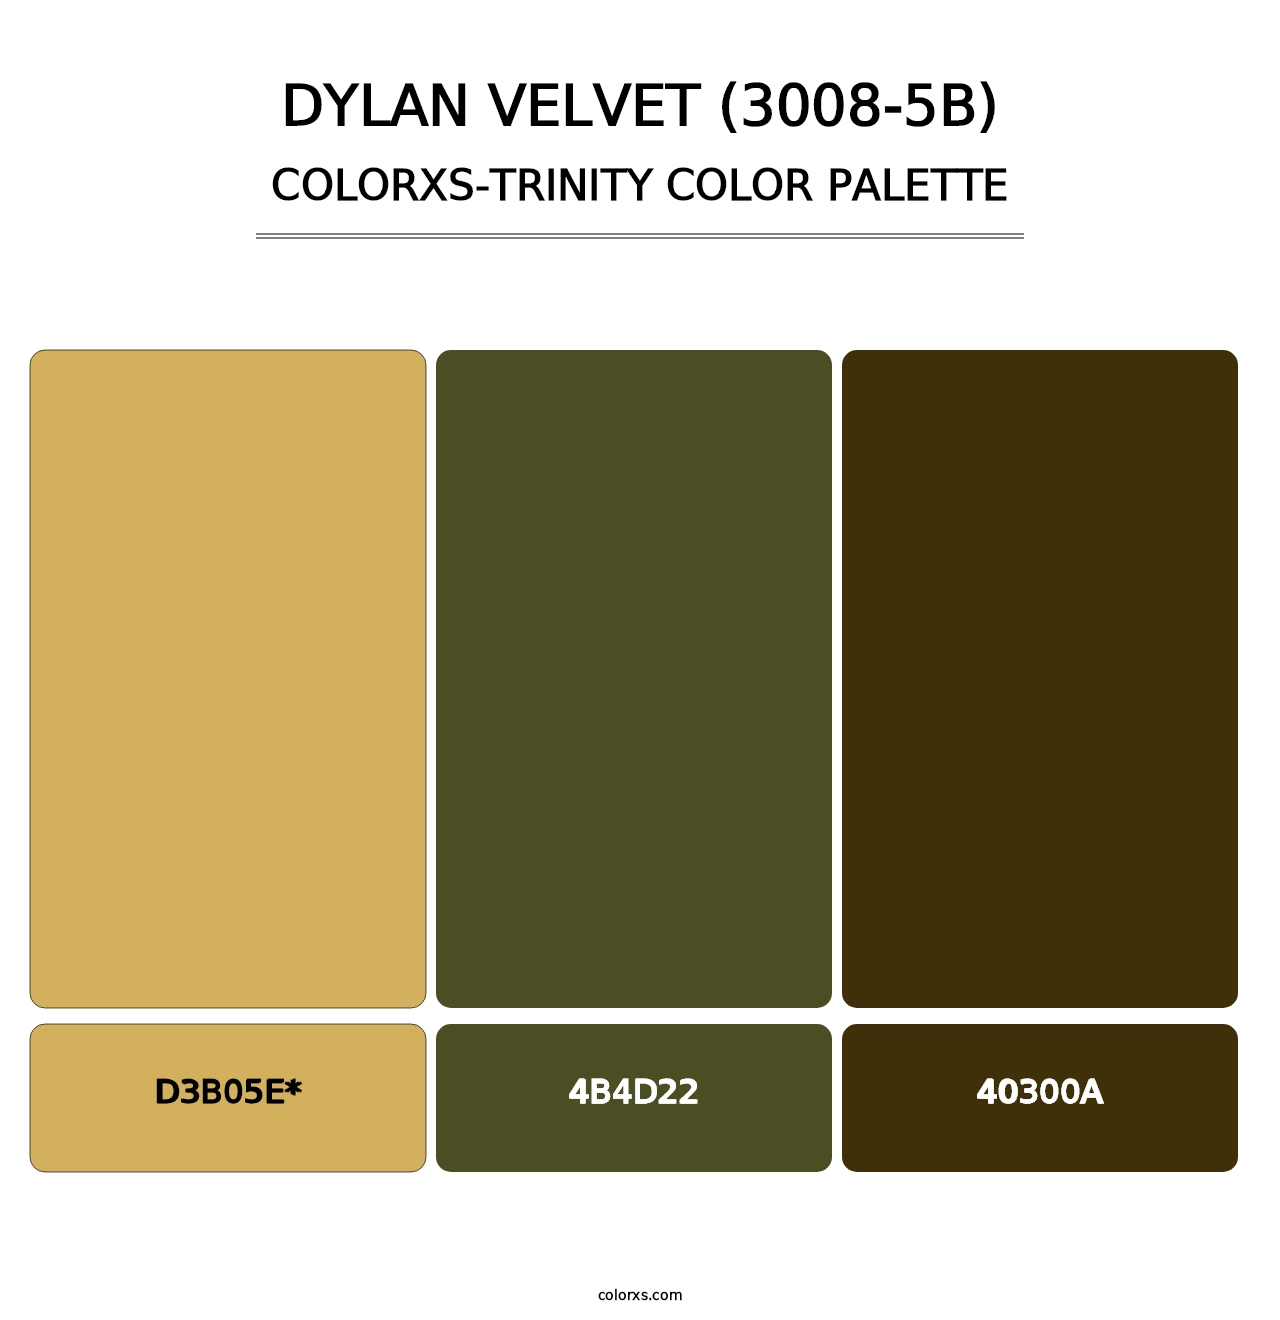 Dylan Velvet (3008-5B) - Colorxs Trinity Palette